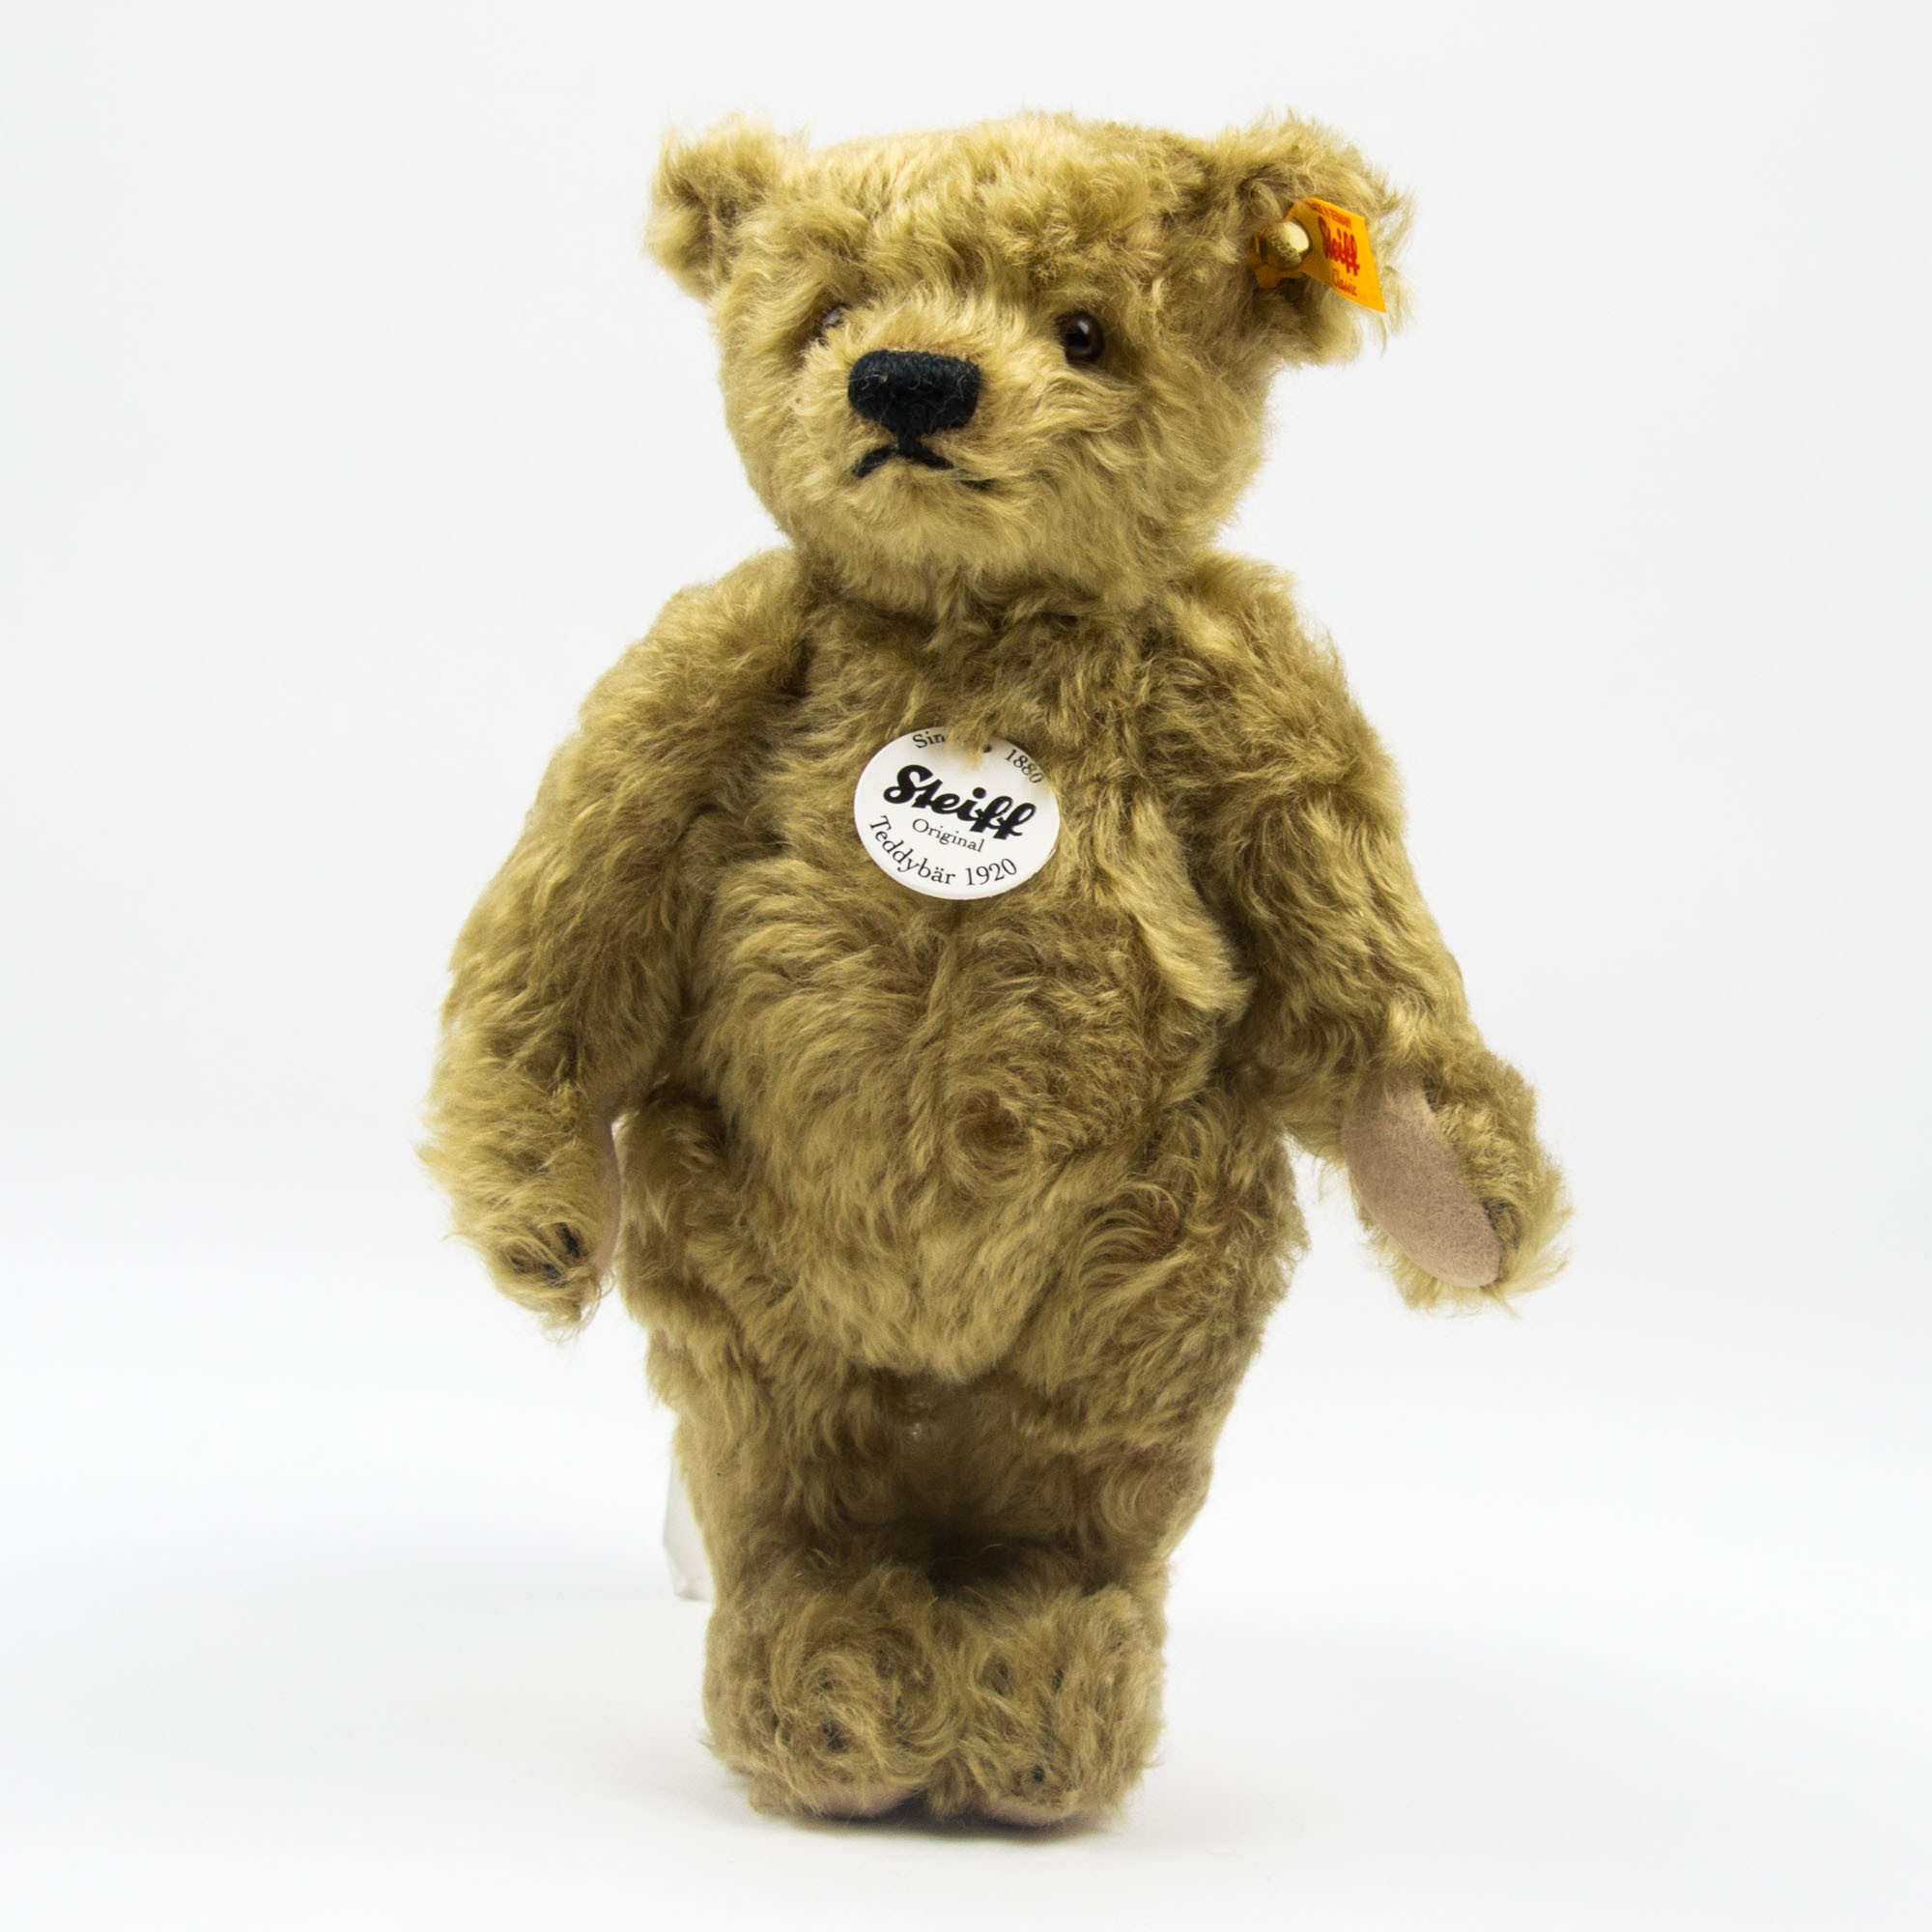 Steiff “Classic Teddy Bear” for Collectors | littlehipstar.com